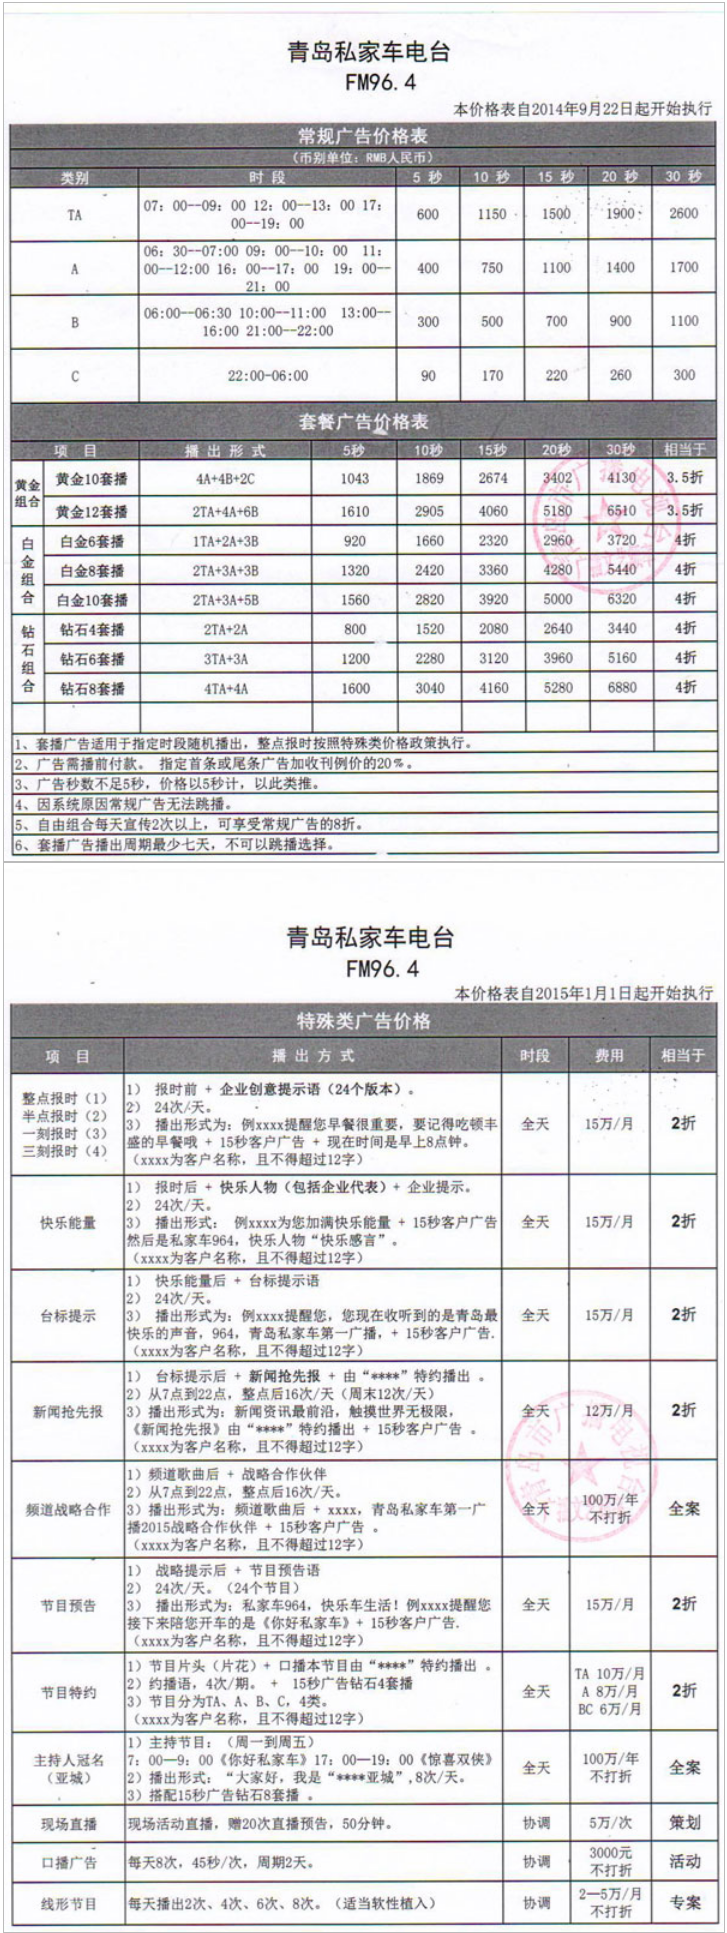 2015青岛人民广播电台私家车电台 FM96.4广告报价表.png